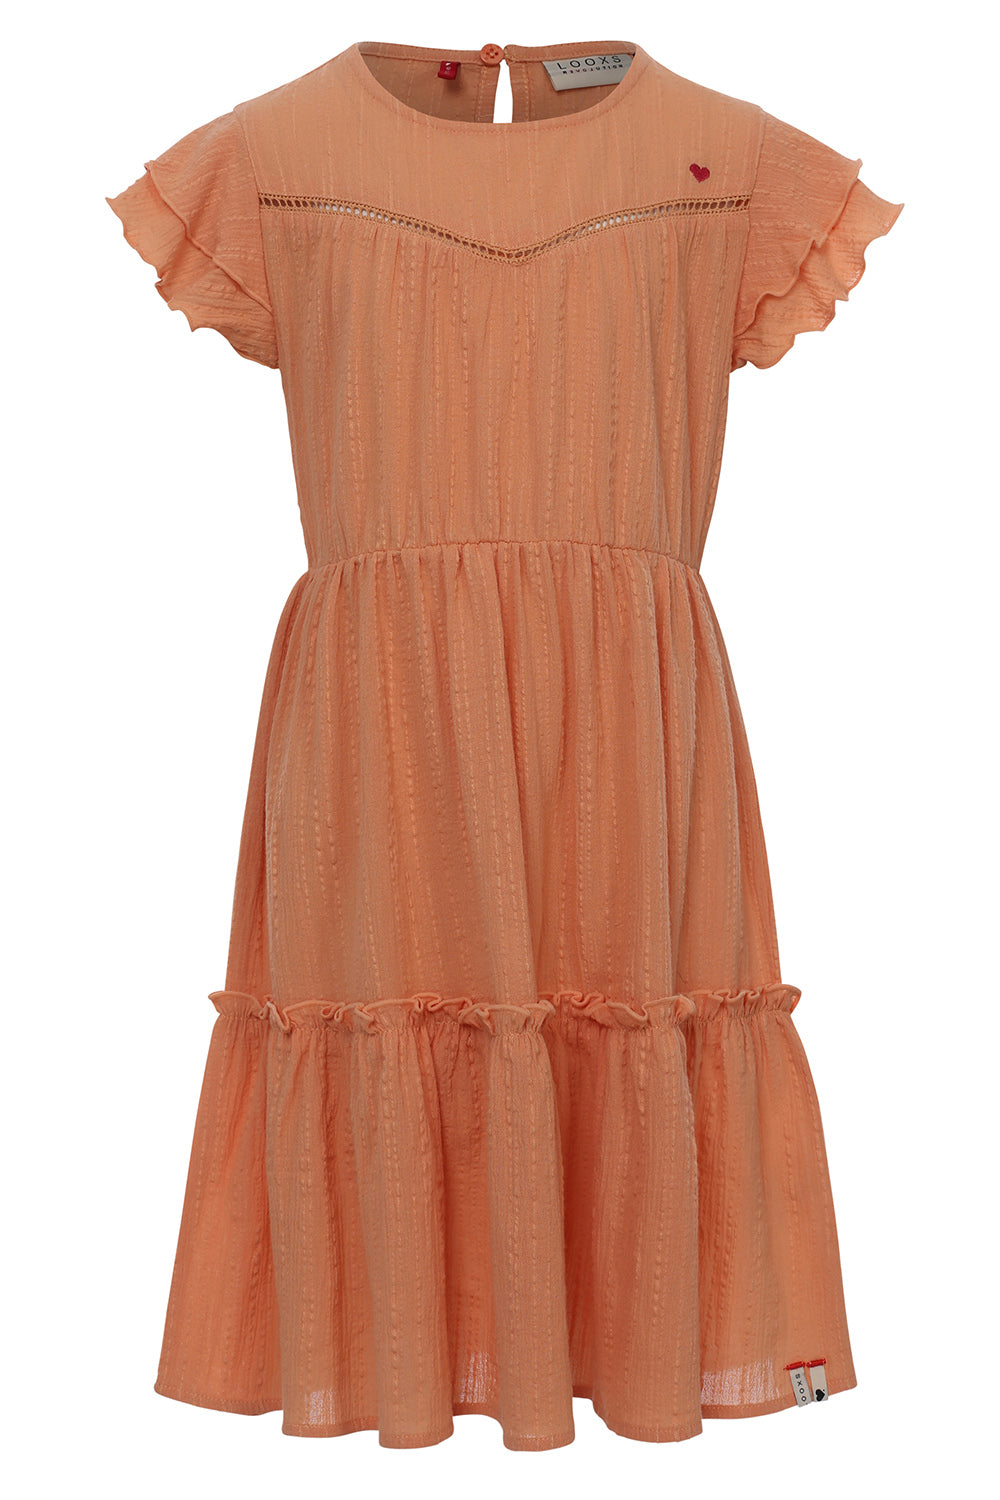 Meisjes Crinckle Dress van LOOXS Little in de kleur Orange peach in maat 128.